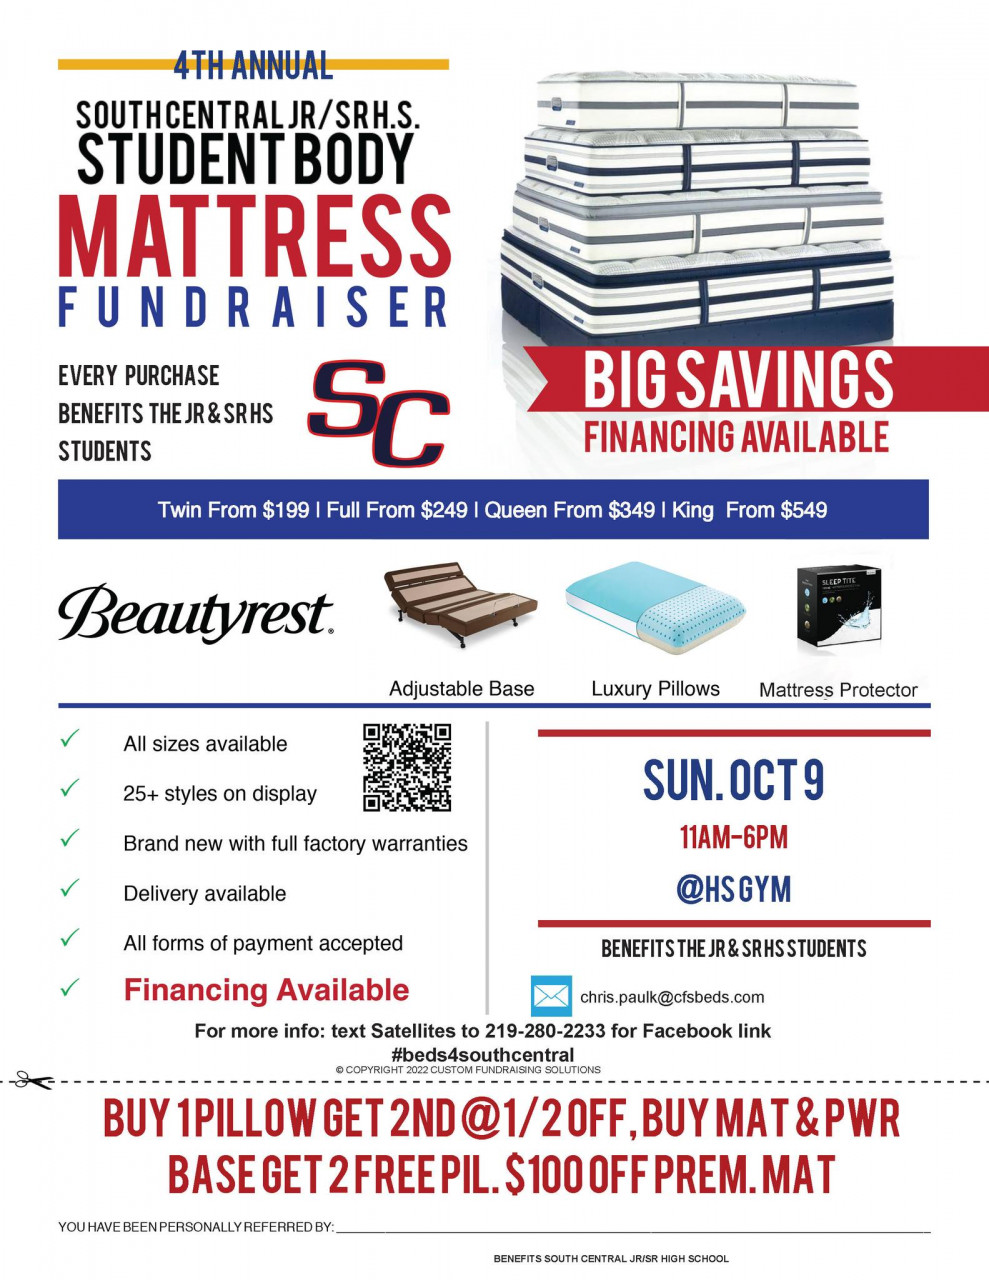 4th Annual Mattress Fundraiser